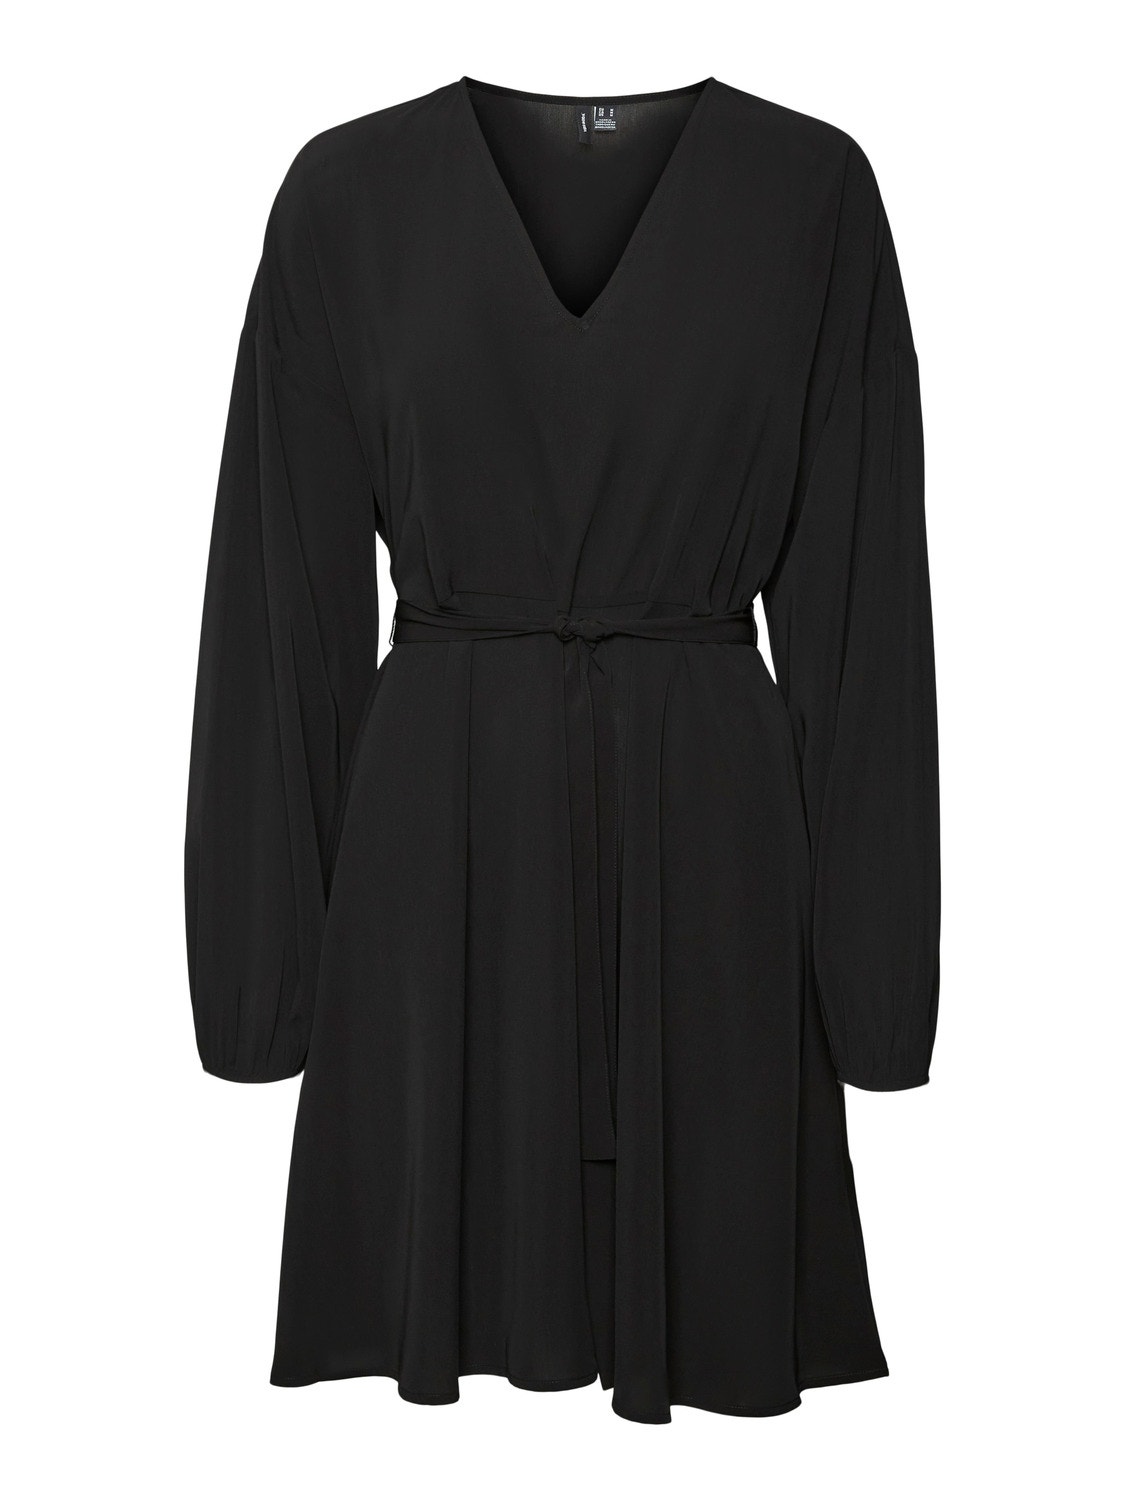 Vero Moda VMNAJA Short dress -Black - 10294419